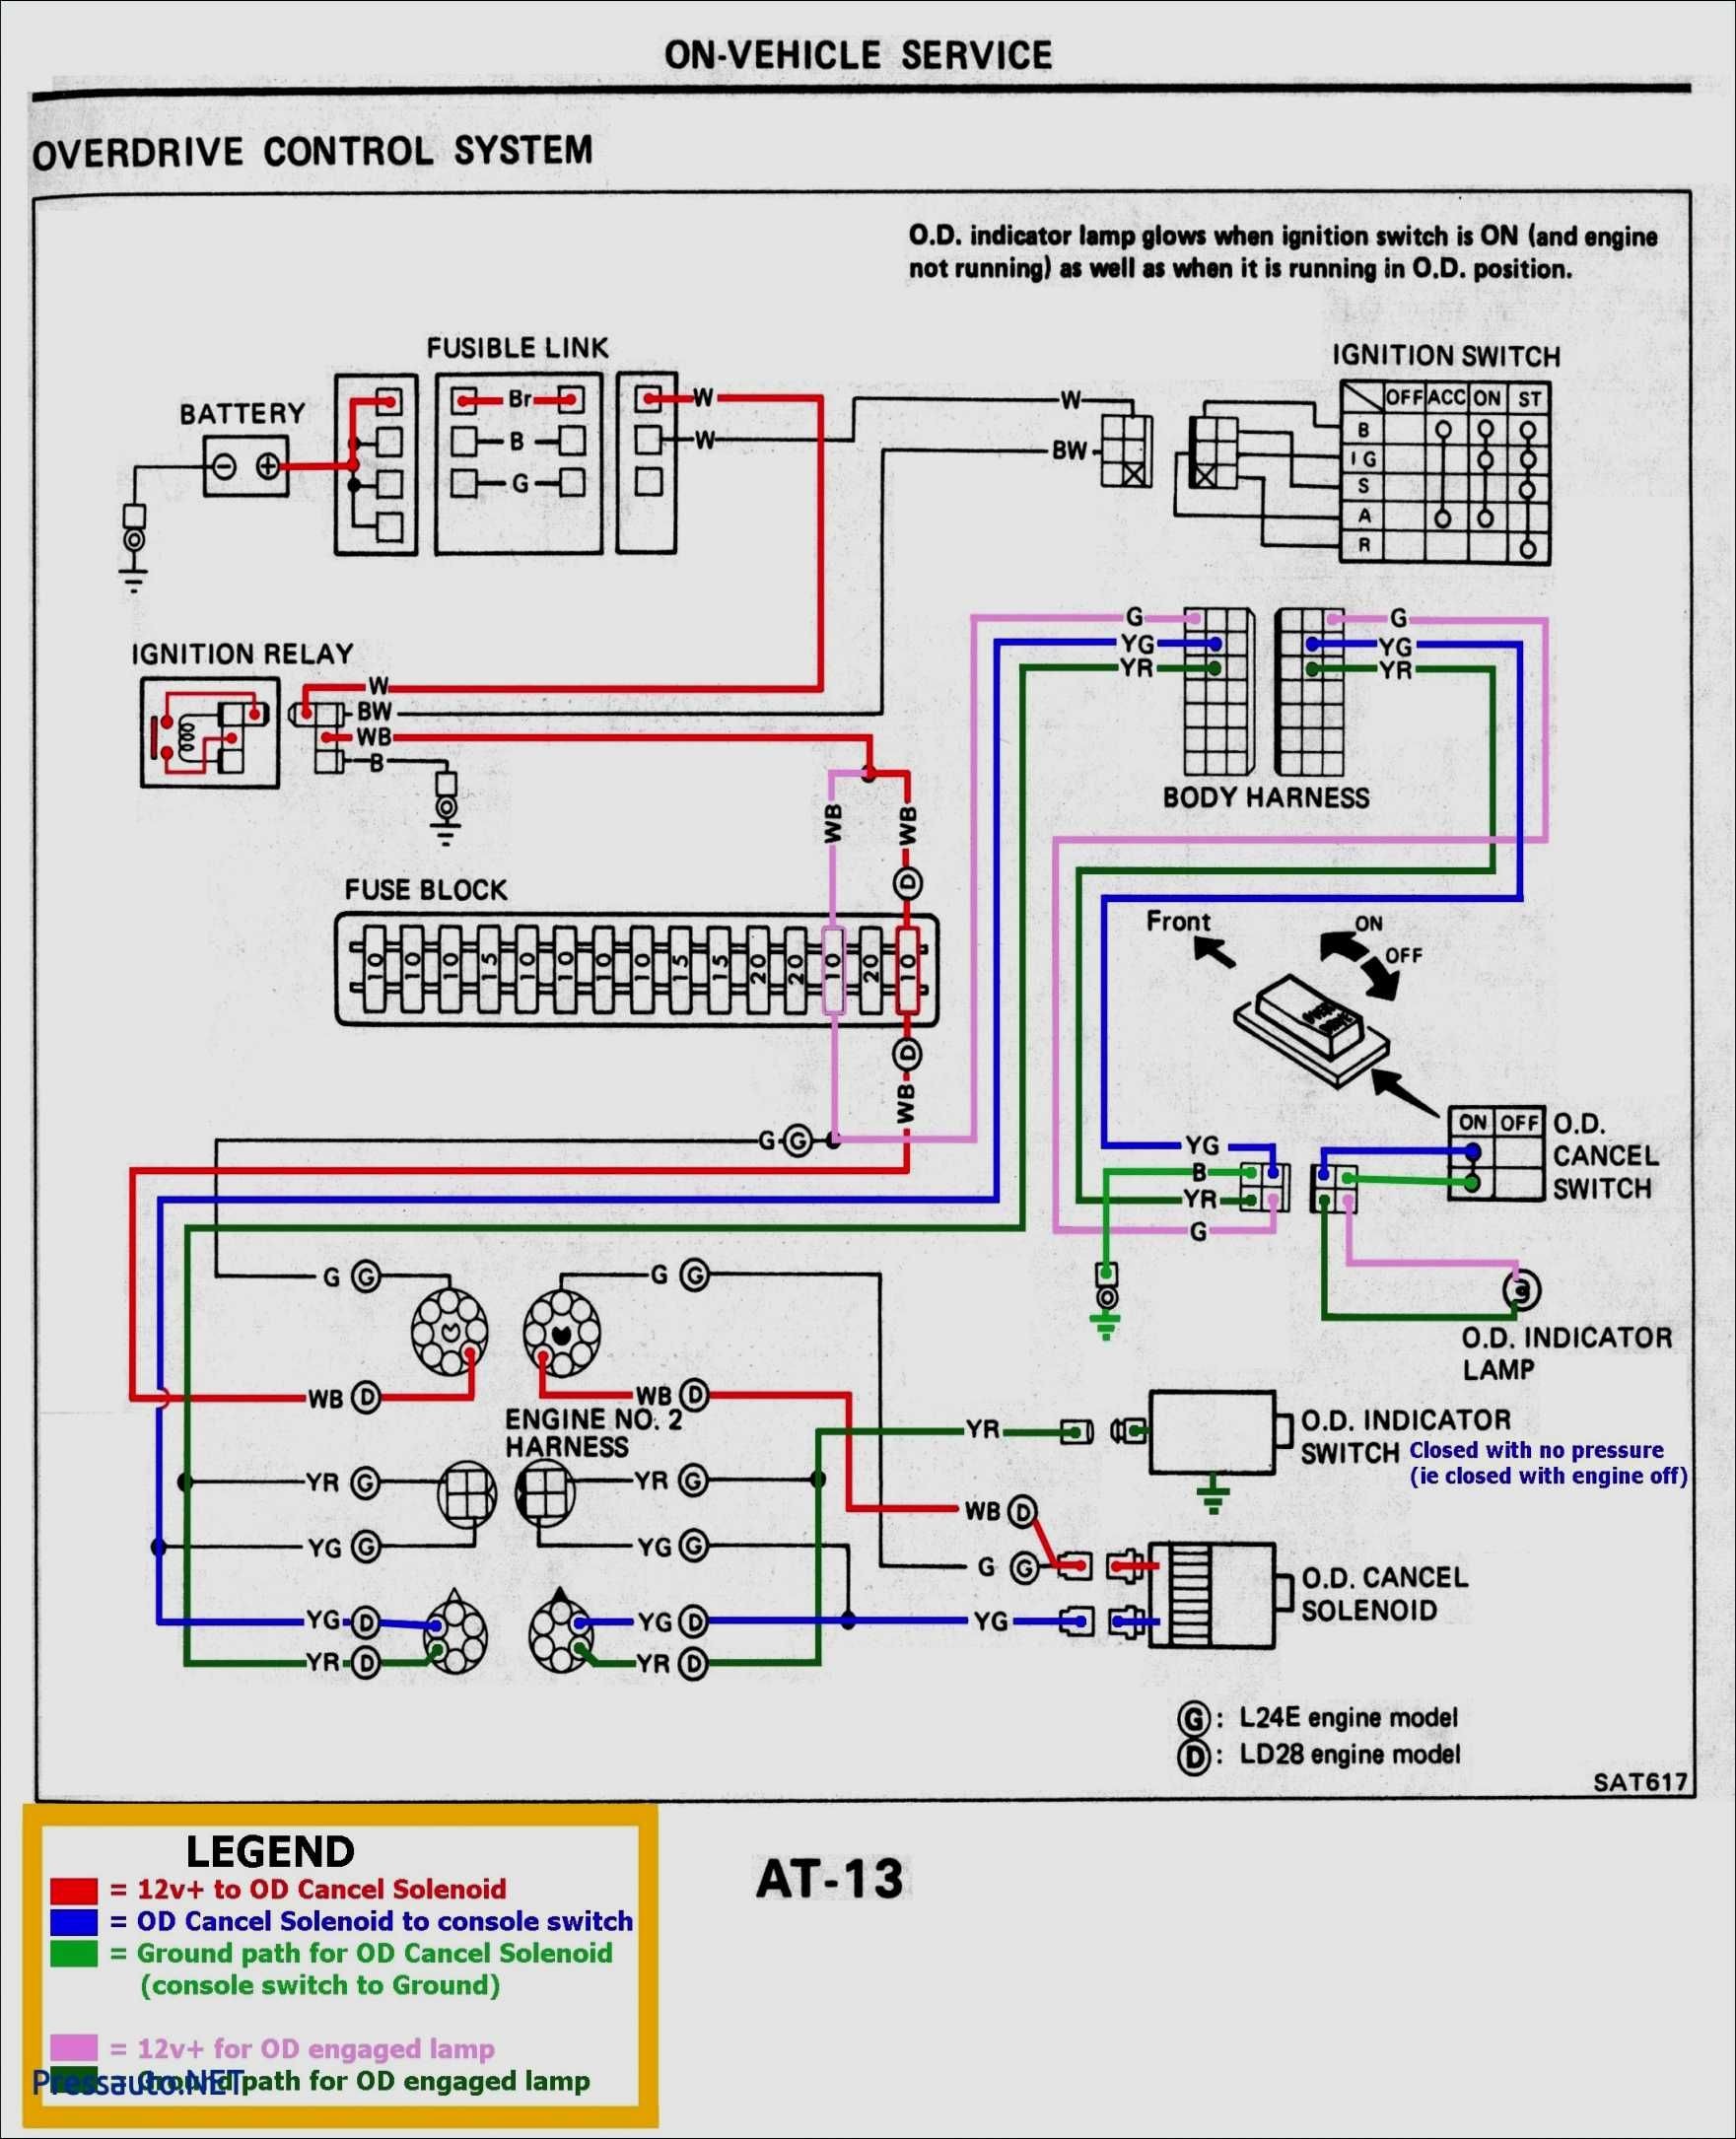 2002 Honda Crv Stereo Wiring Diagram from detoxicrecenze.com